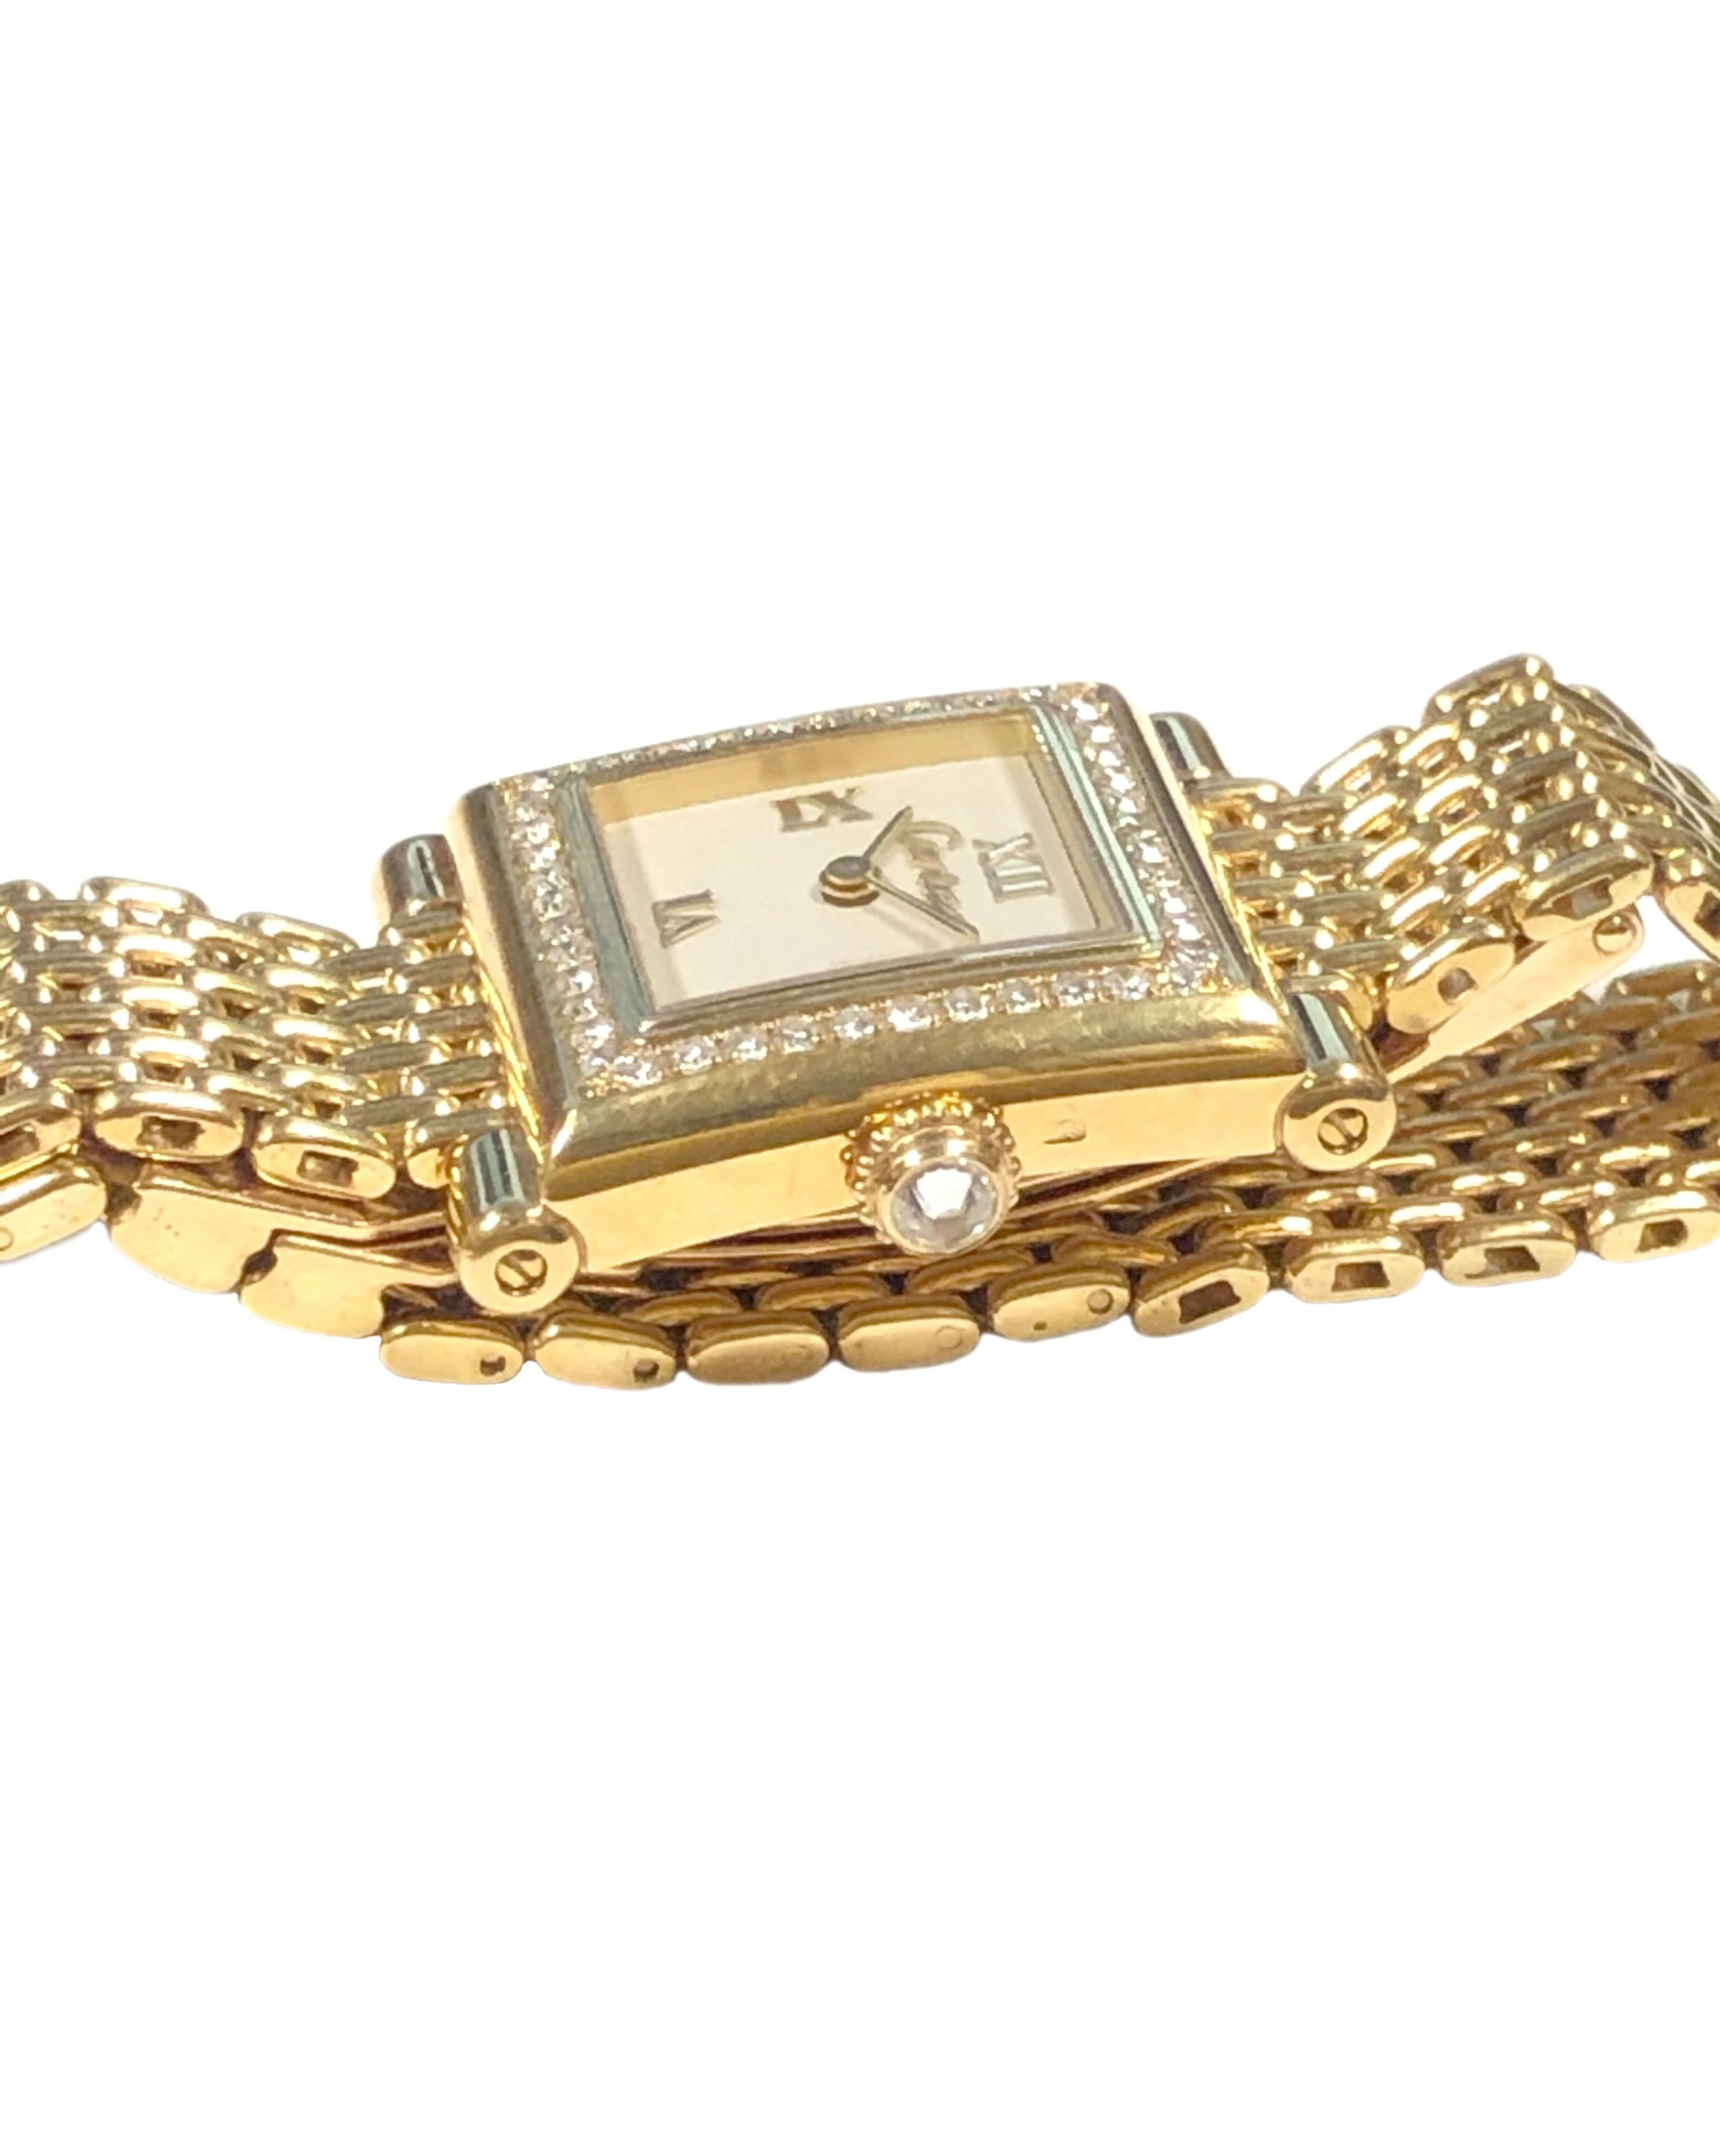 CIRCA 1987 Cartier Trocadero Damenarmbanduhr, dieses Modell war ein sehr begrenztes Angebot auch als Boutique Collection'S und extrem schwer zu finden. 24 X 20 M.M. 18K Gelbgold 2-teiliges Gehäuse mit Diamantbesatz Lünette und Diamantbesatz Krone.